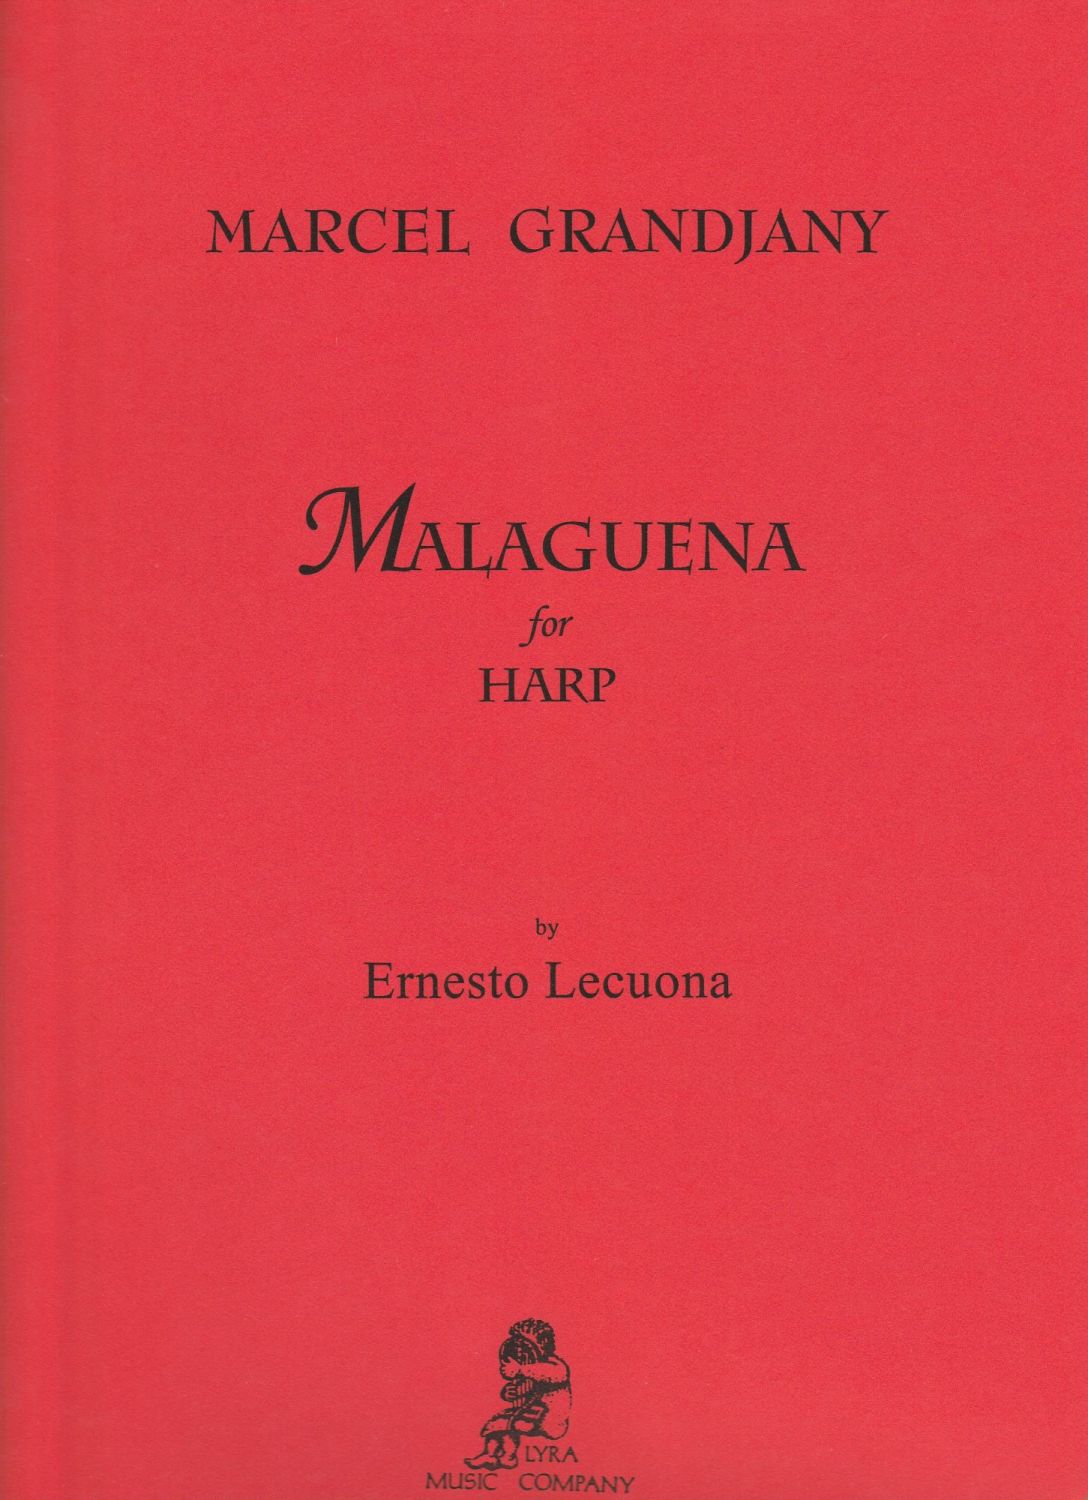 Malaguena for Harp - Ernesto Lecuona